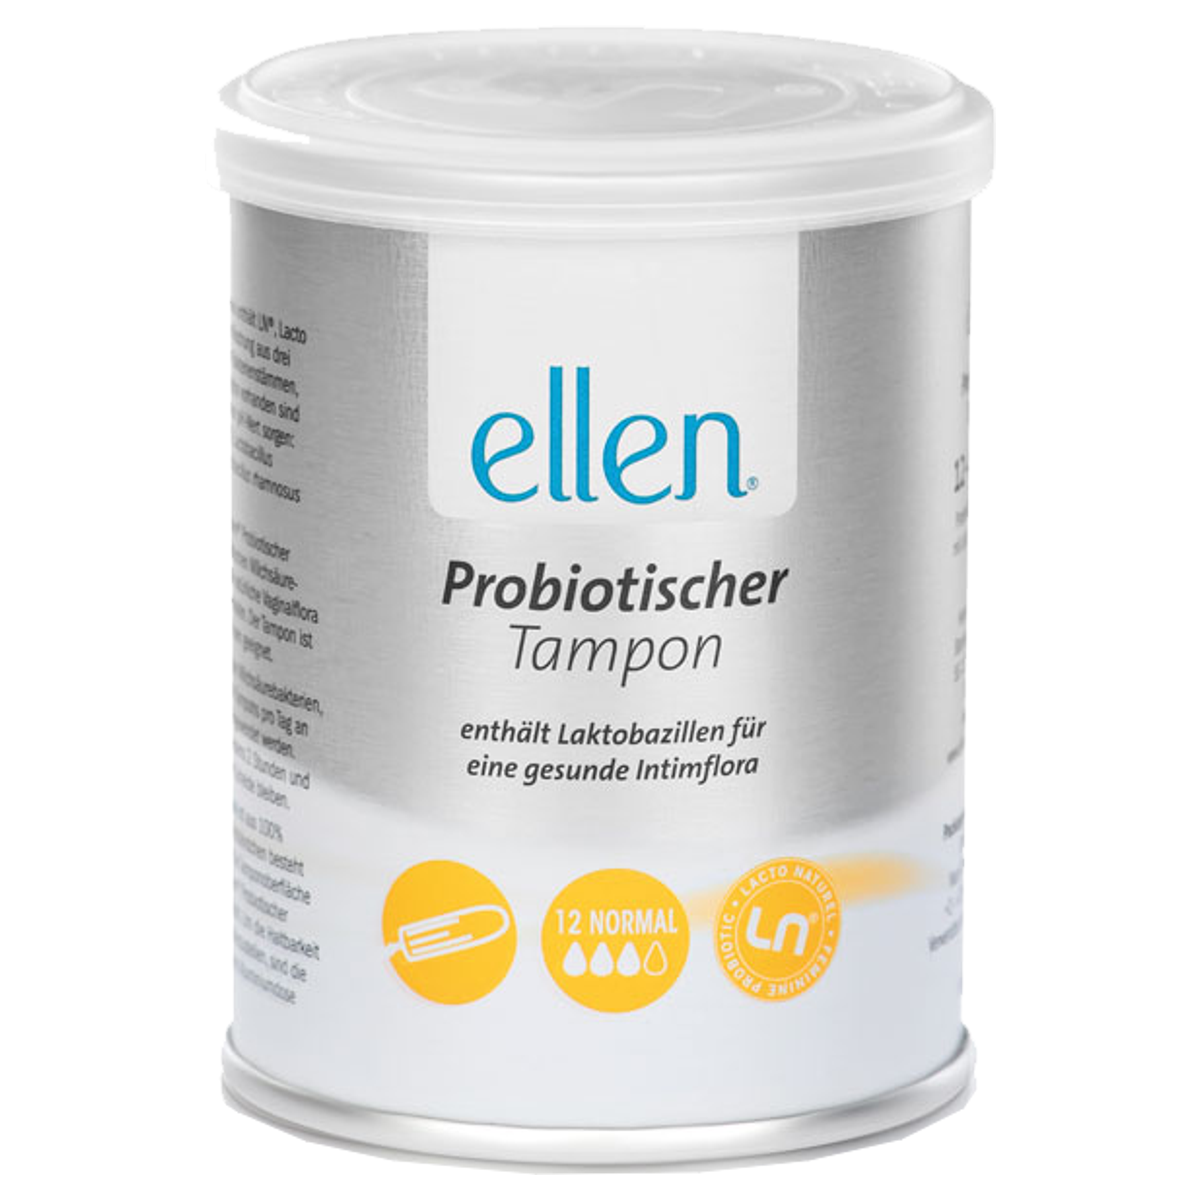 Ellen_Probiotic_Tampons_normal_online_kaufen